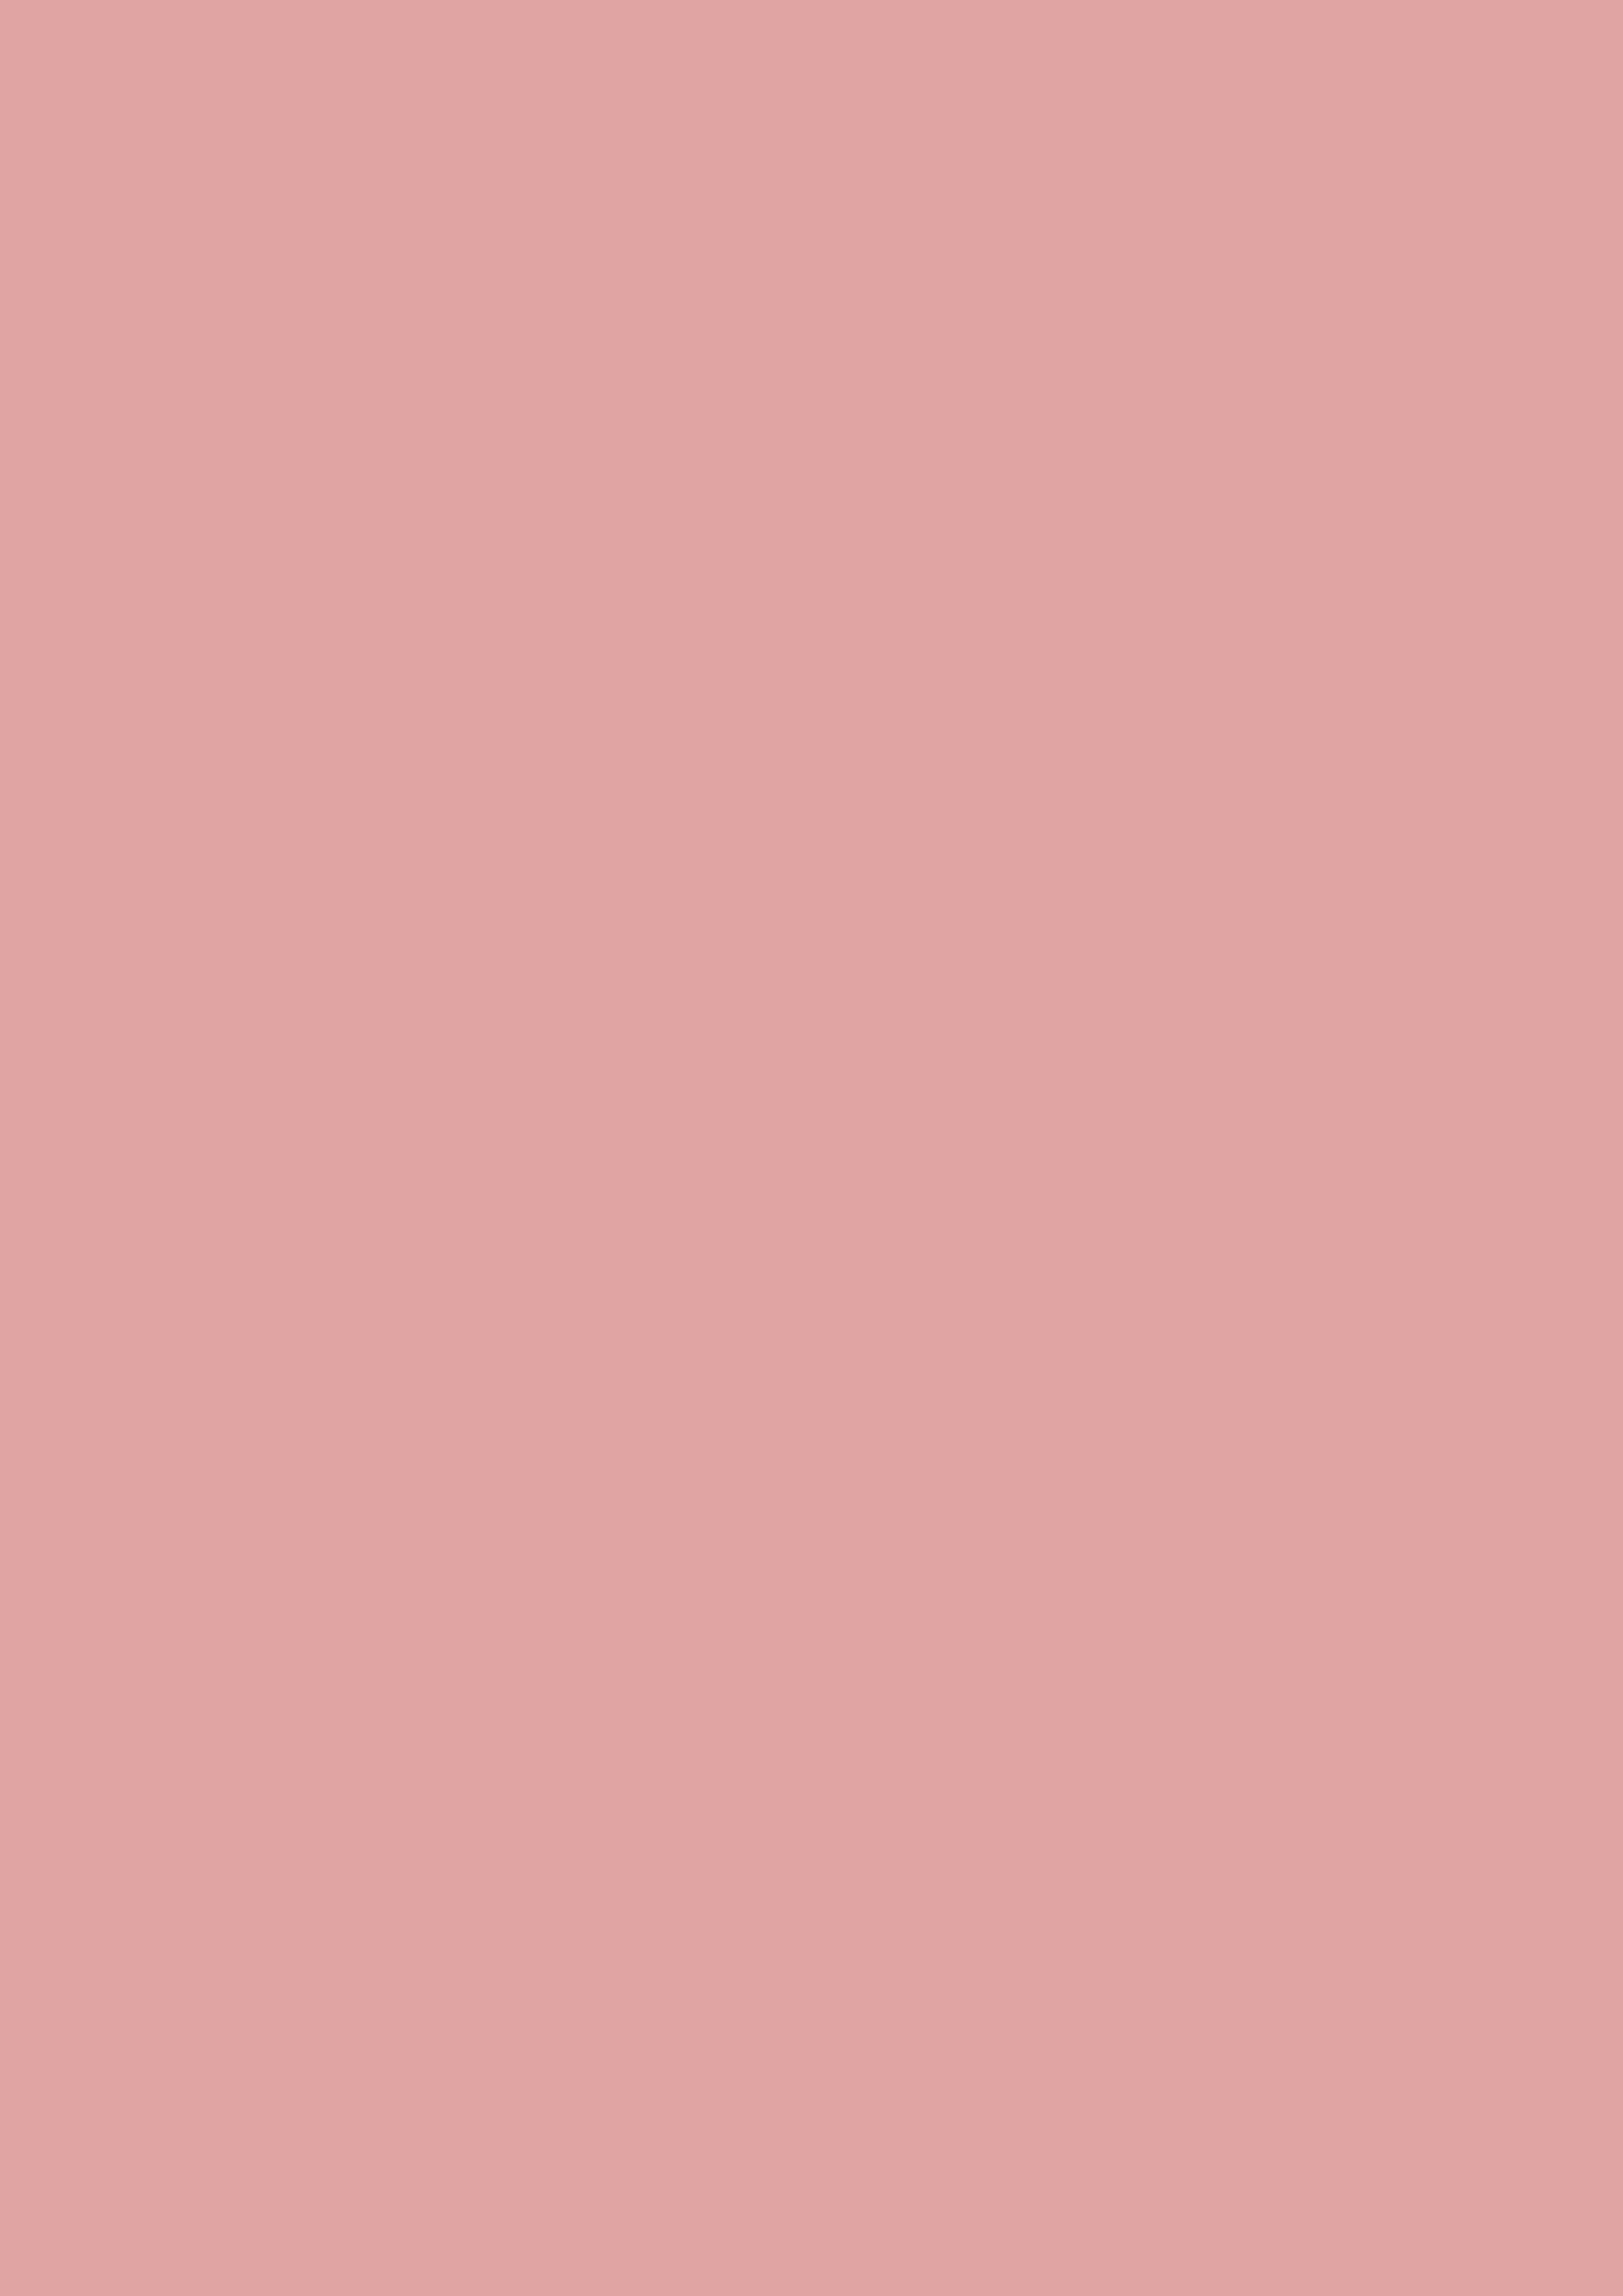 nền hồng nhạt đơn sắc (pastel pink solid color background): Những bức ảnh với nền hồng nhạt đơn sắc sẽ làm cho bạn mê mẩn. Sự kết hợp giữa màu hồng pastel và độ trong suốt của nó sẽ mang đến sự nữ tính và thanh thoát cho bức ảnh. Nó là một sự lựa chọn hoàn hảo để sử dụng làm một hình nền laptop hoặc điện thoại của bạn.